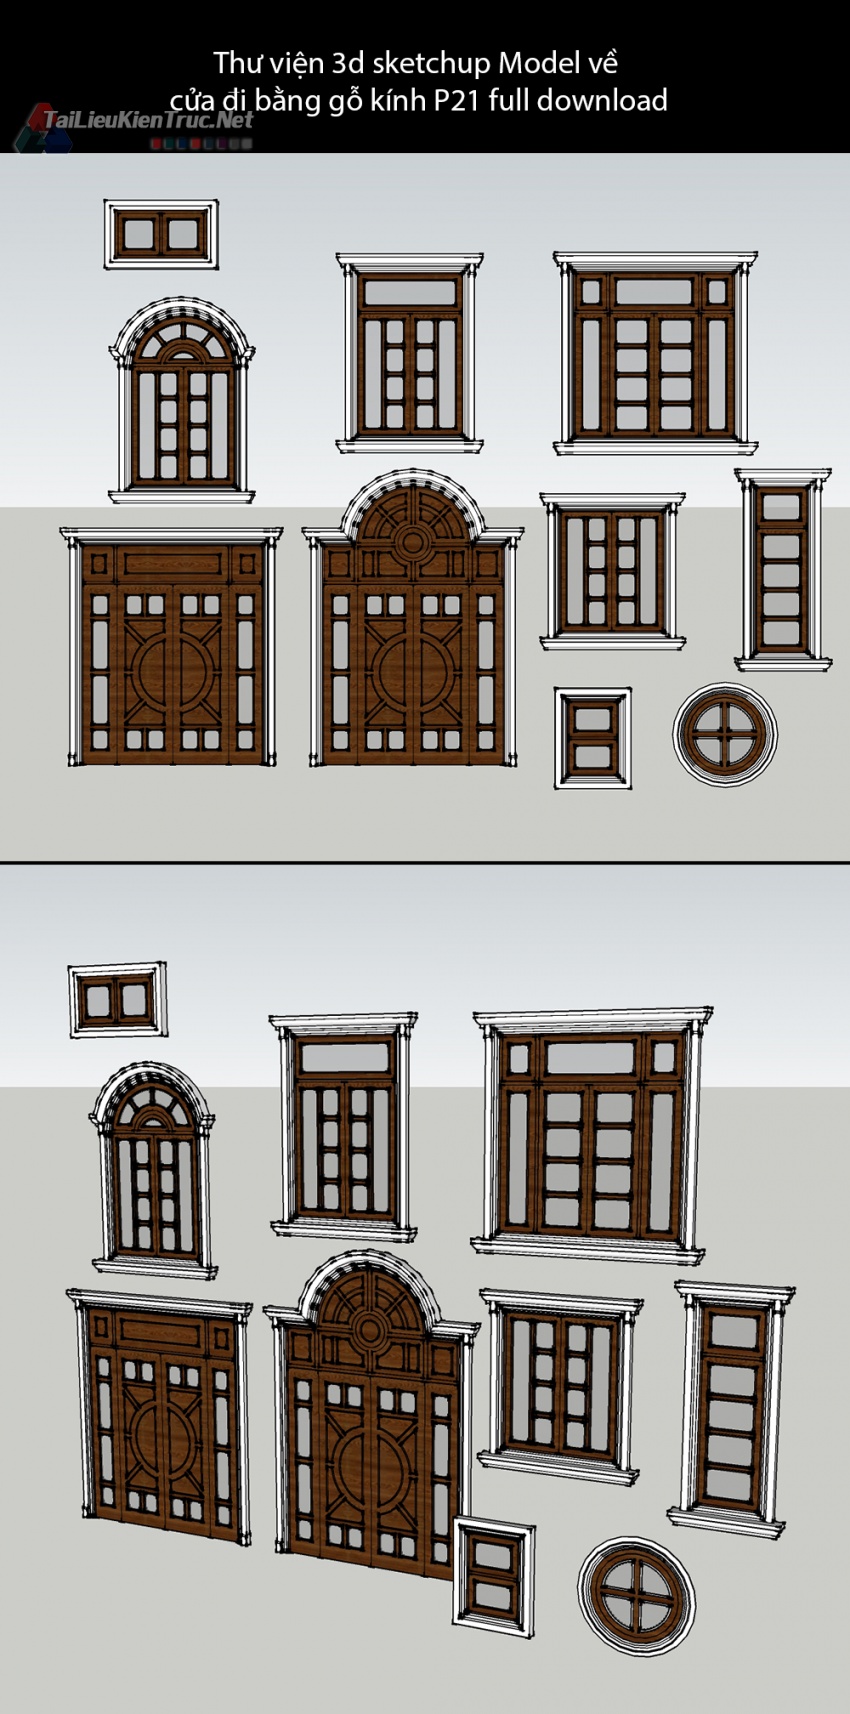 Thư viện 3d sketchup Model về cửa đi bằng gỗ kính P21 full download